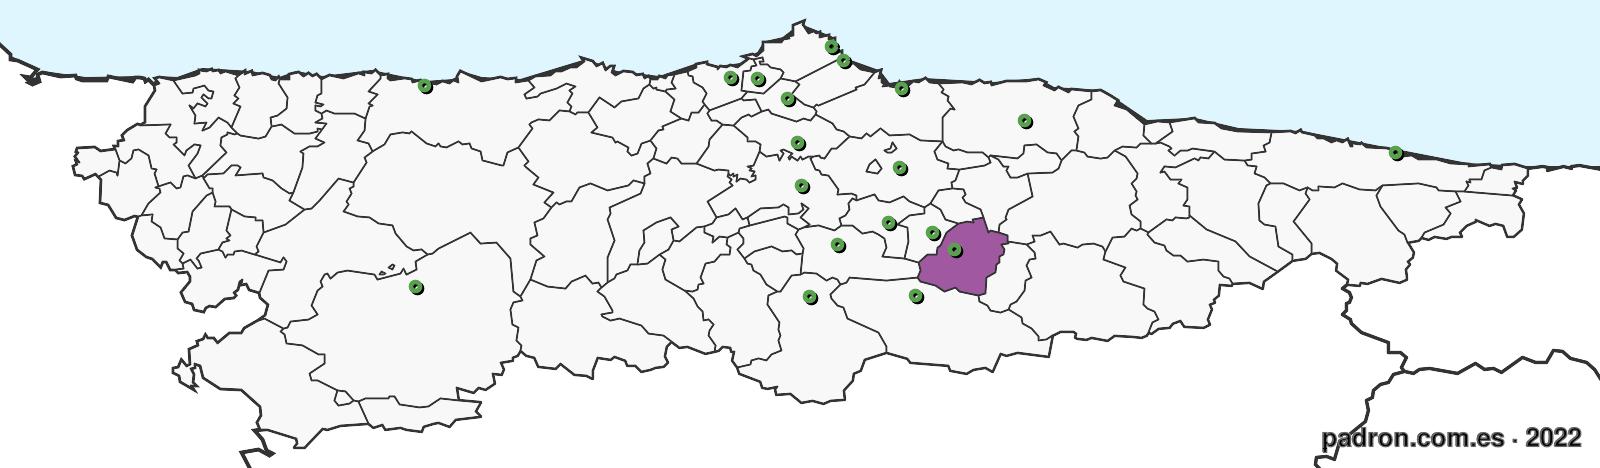 benineses en asturias.